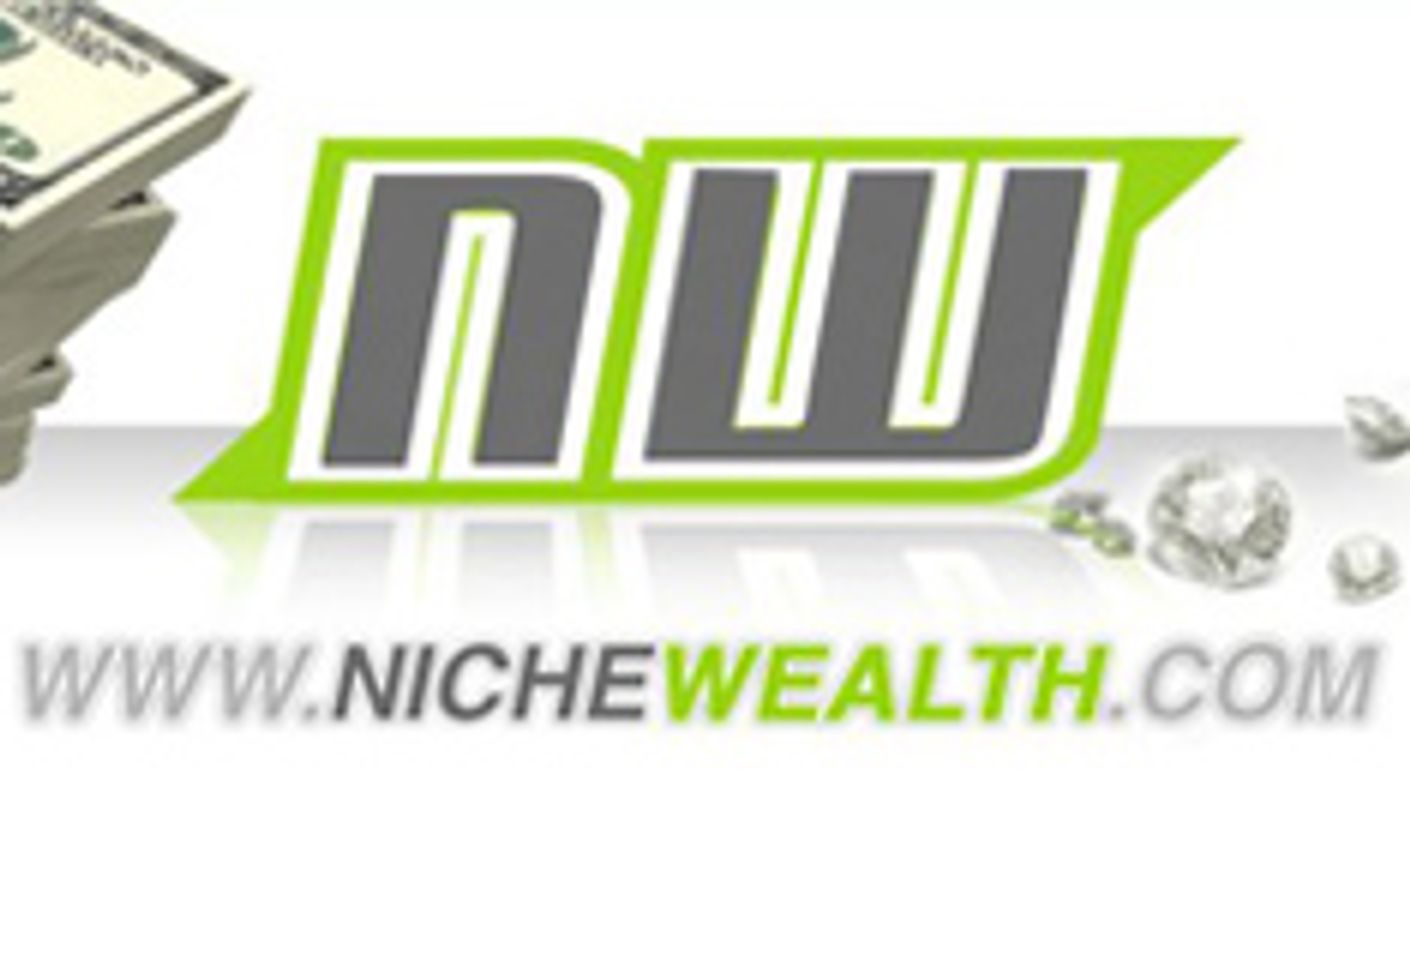 NicheWealth.com Launches Mobile White Label Site, JustPornoMobile.com